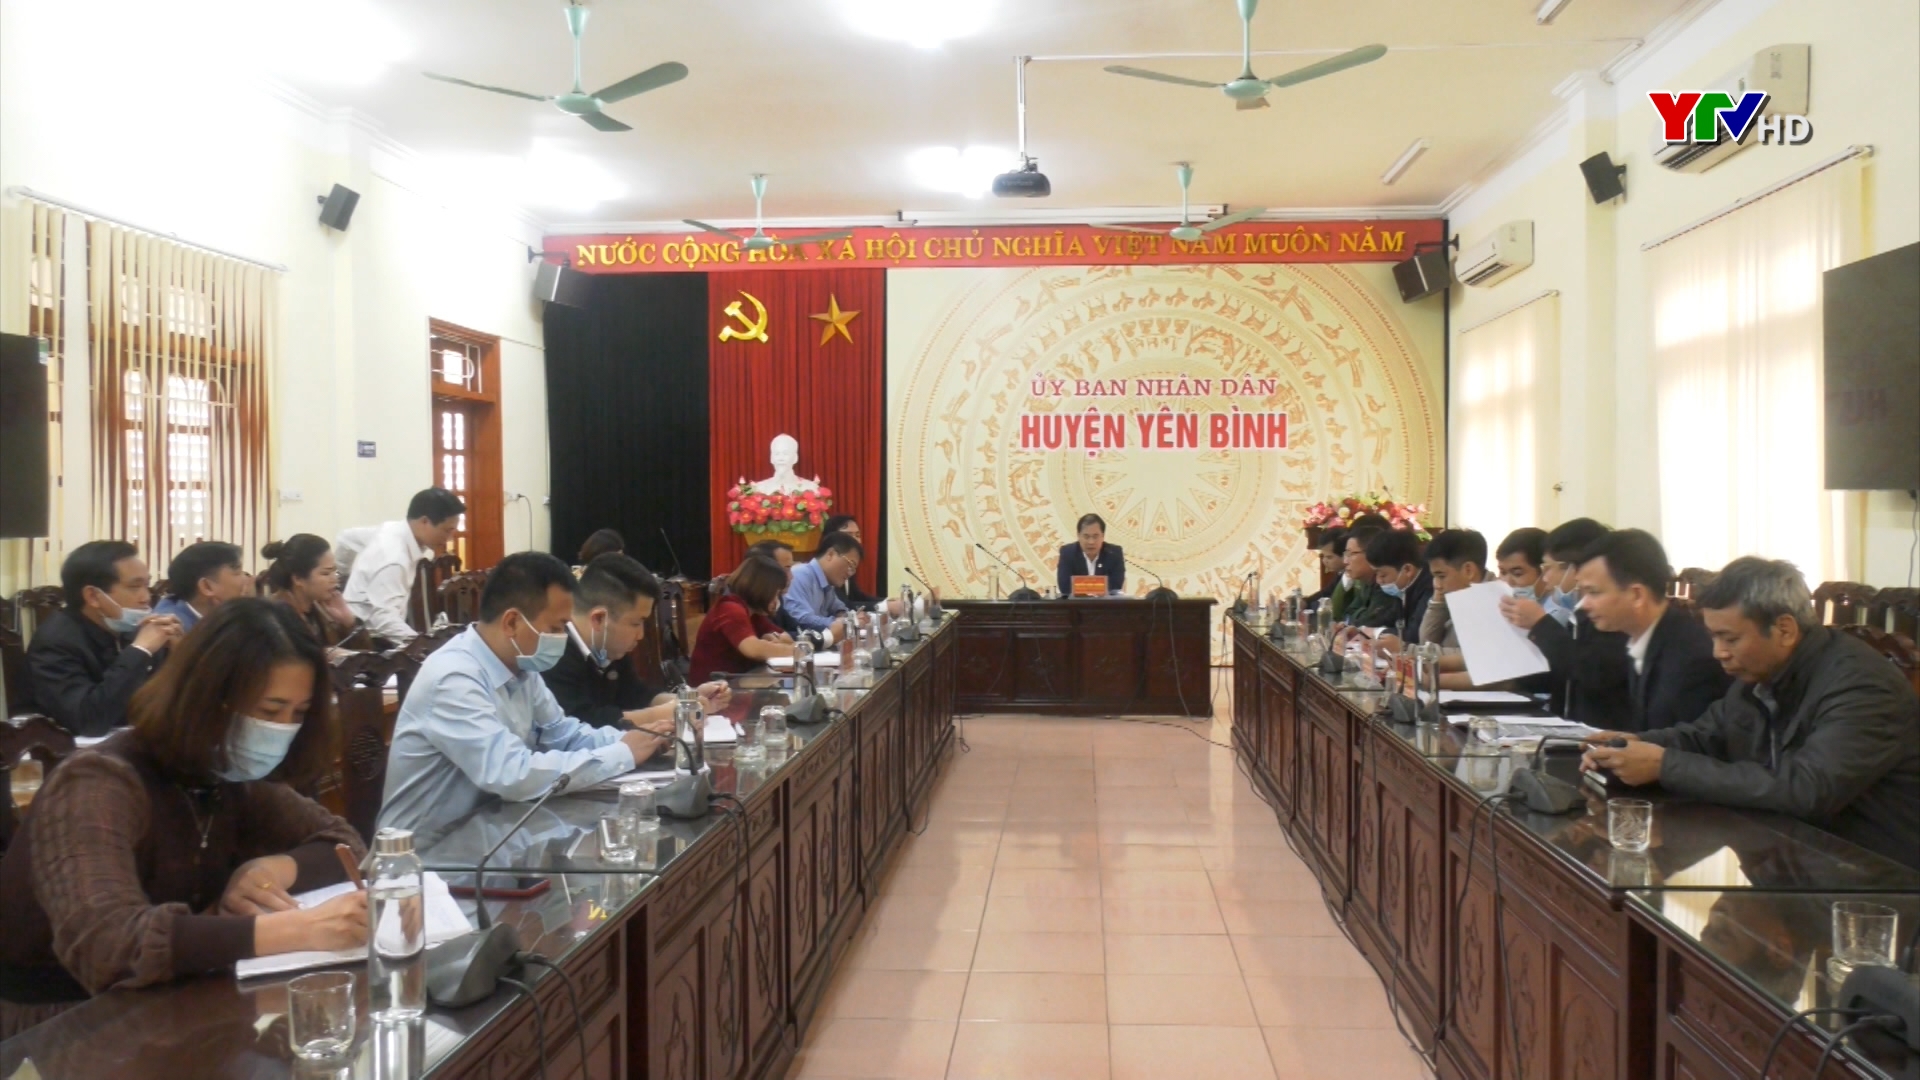 Huyện Yên Bình triển khai các bước bầu cử đại biểu quốc hội và đại biểu HĐND các cấp